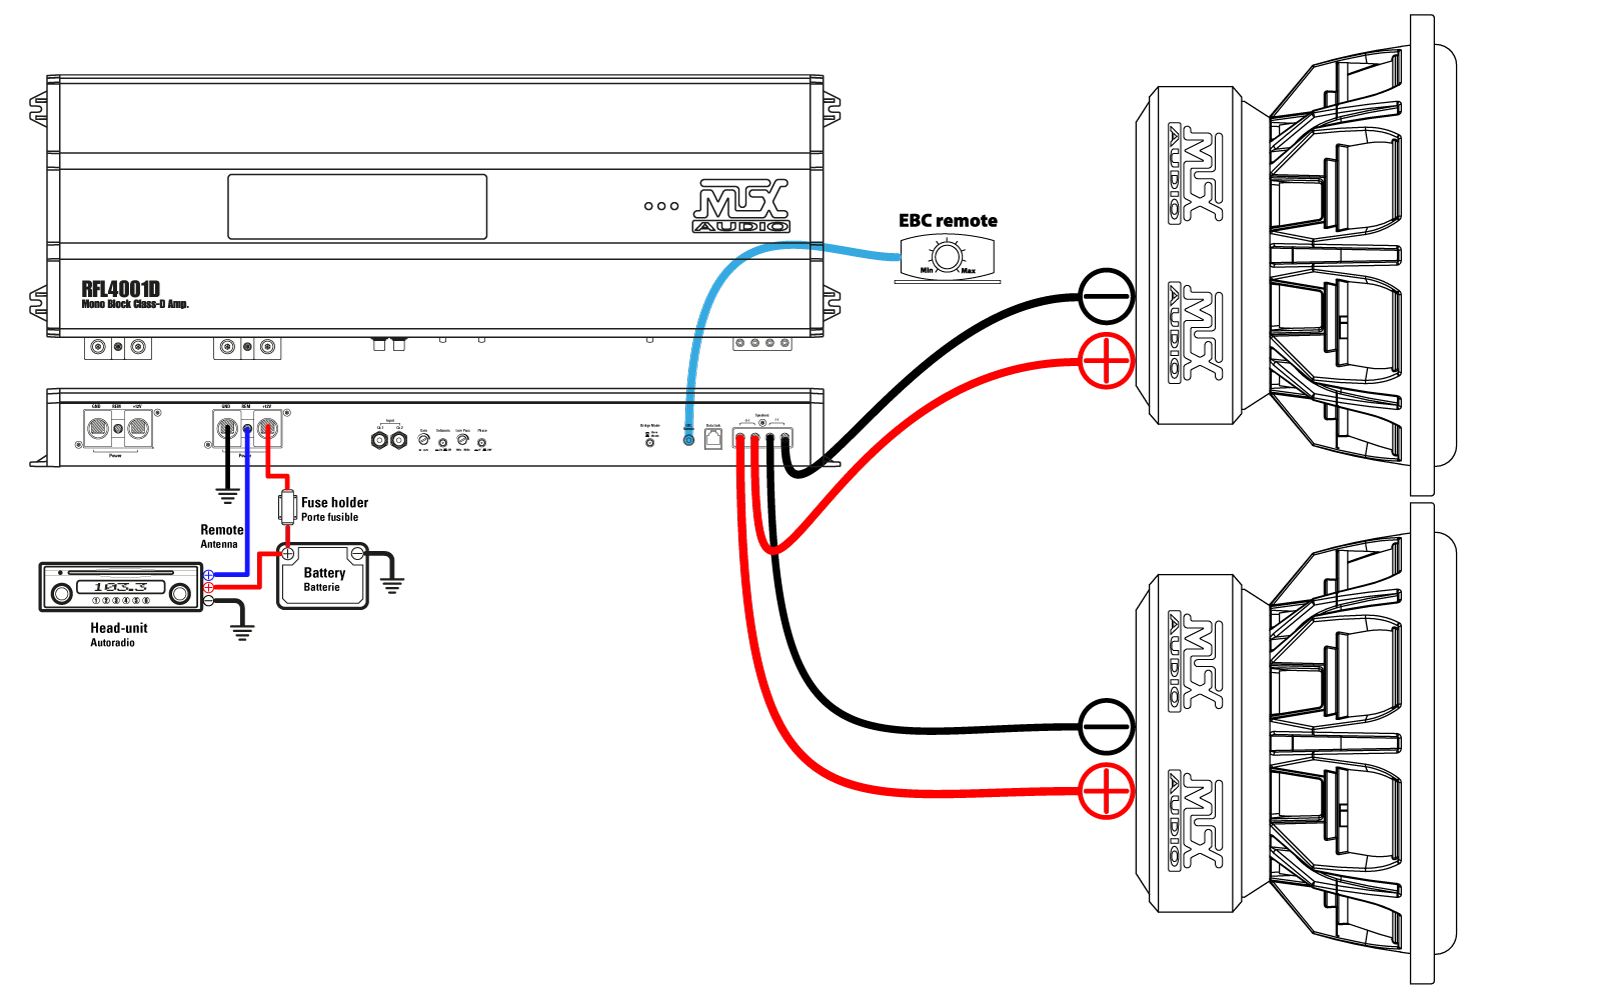 #2. Un amplificateur RFL4001D se connecte parfaitement avec deux subwoofers TX812 (1Ω)